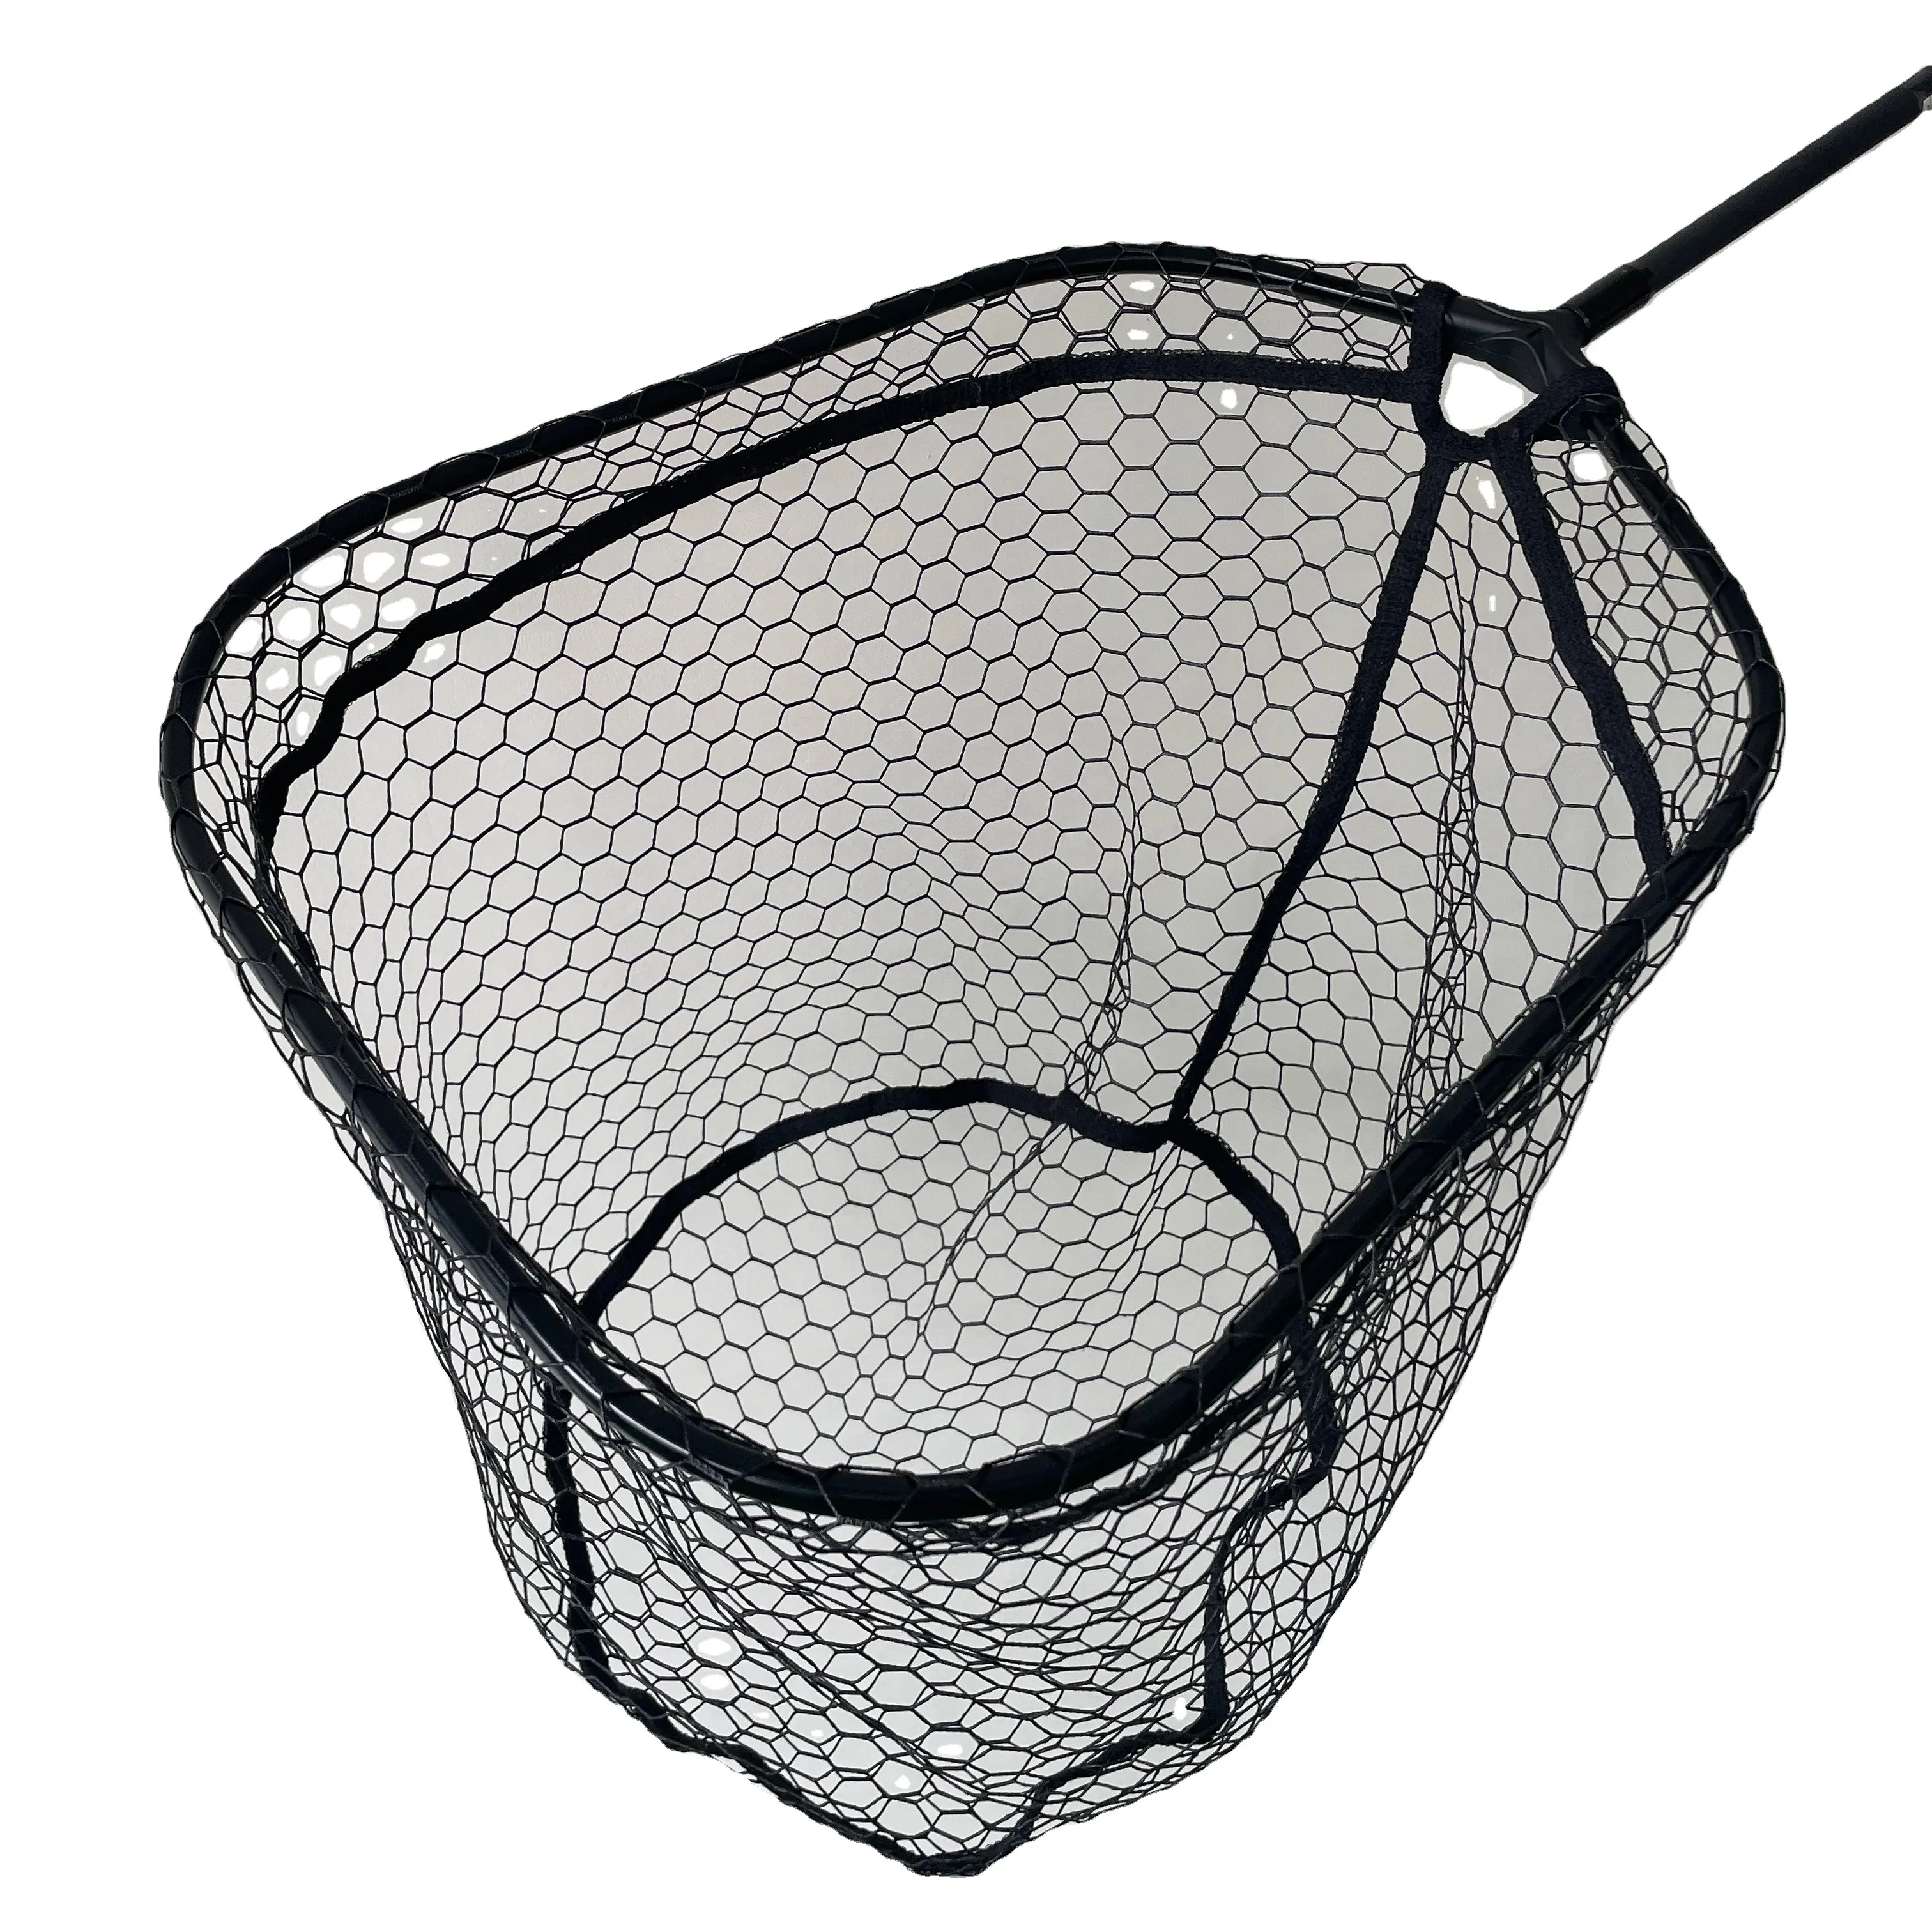 Reti da pesca per attrezzatura da pesca con rete a mano pecche